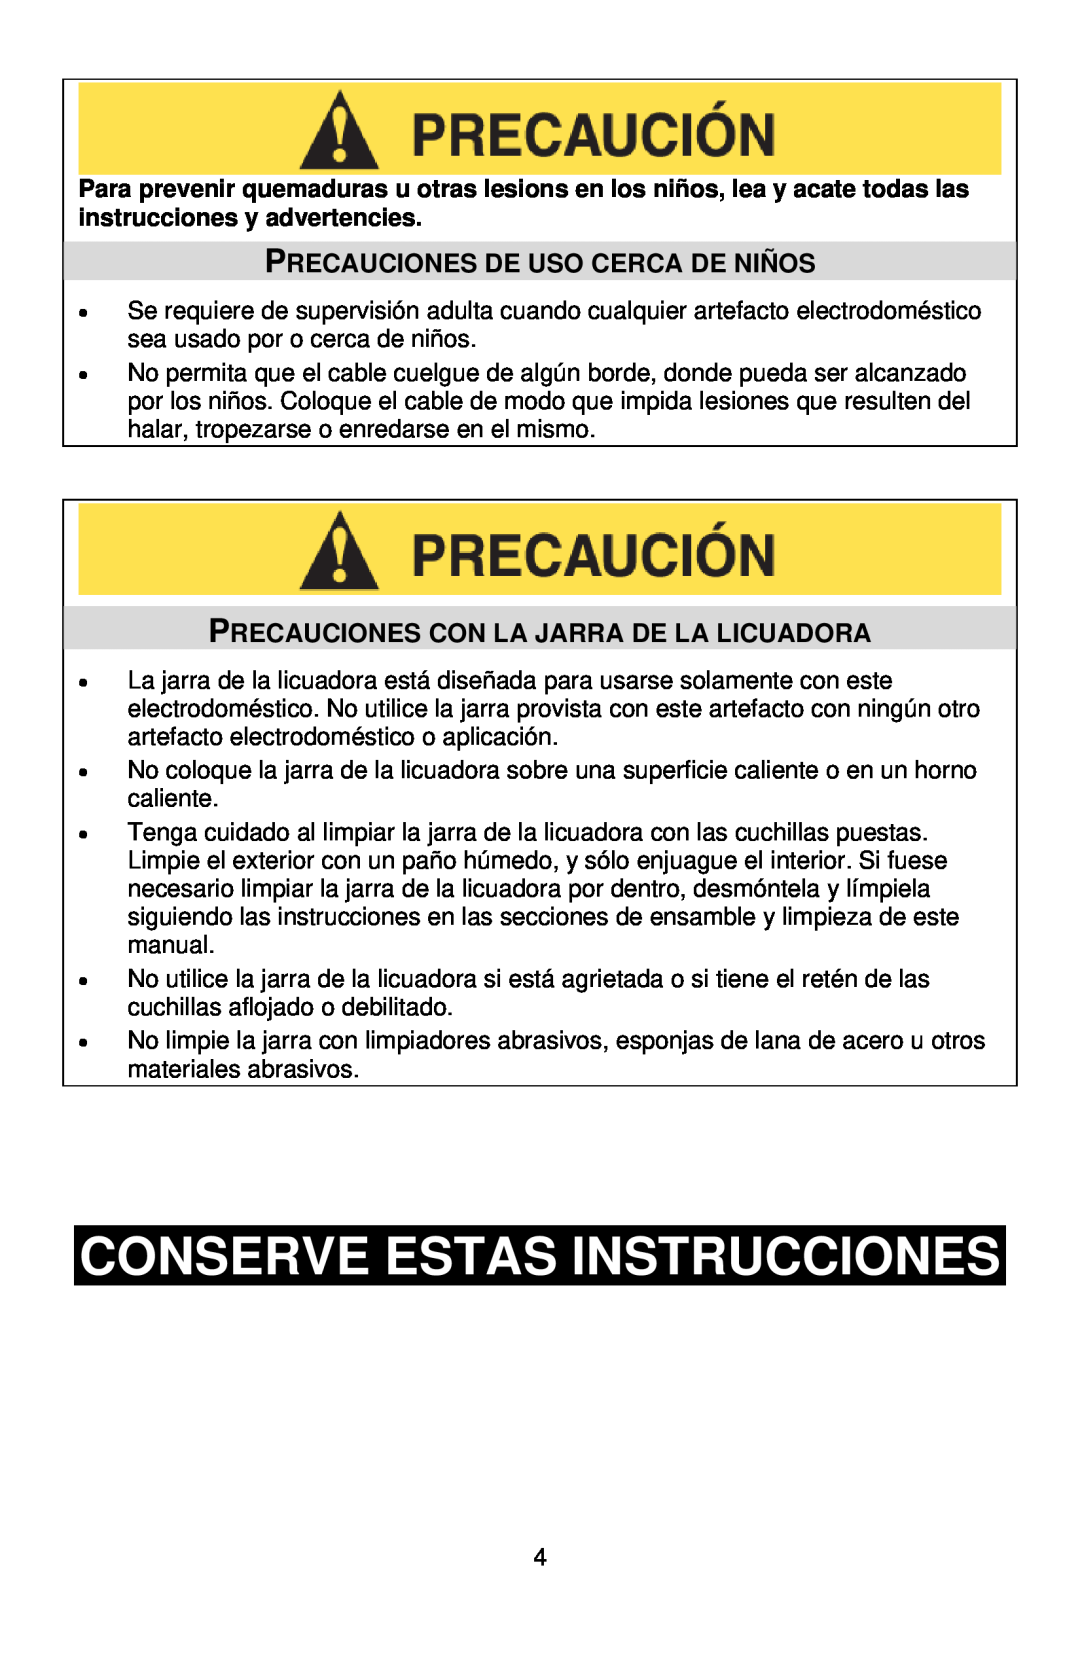 West Bend L5700 instruction manual Conserve Estas Instrucciones, Precauciones De Uso Cerca De Niños 